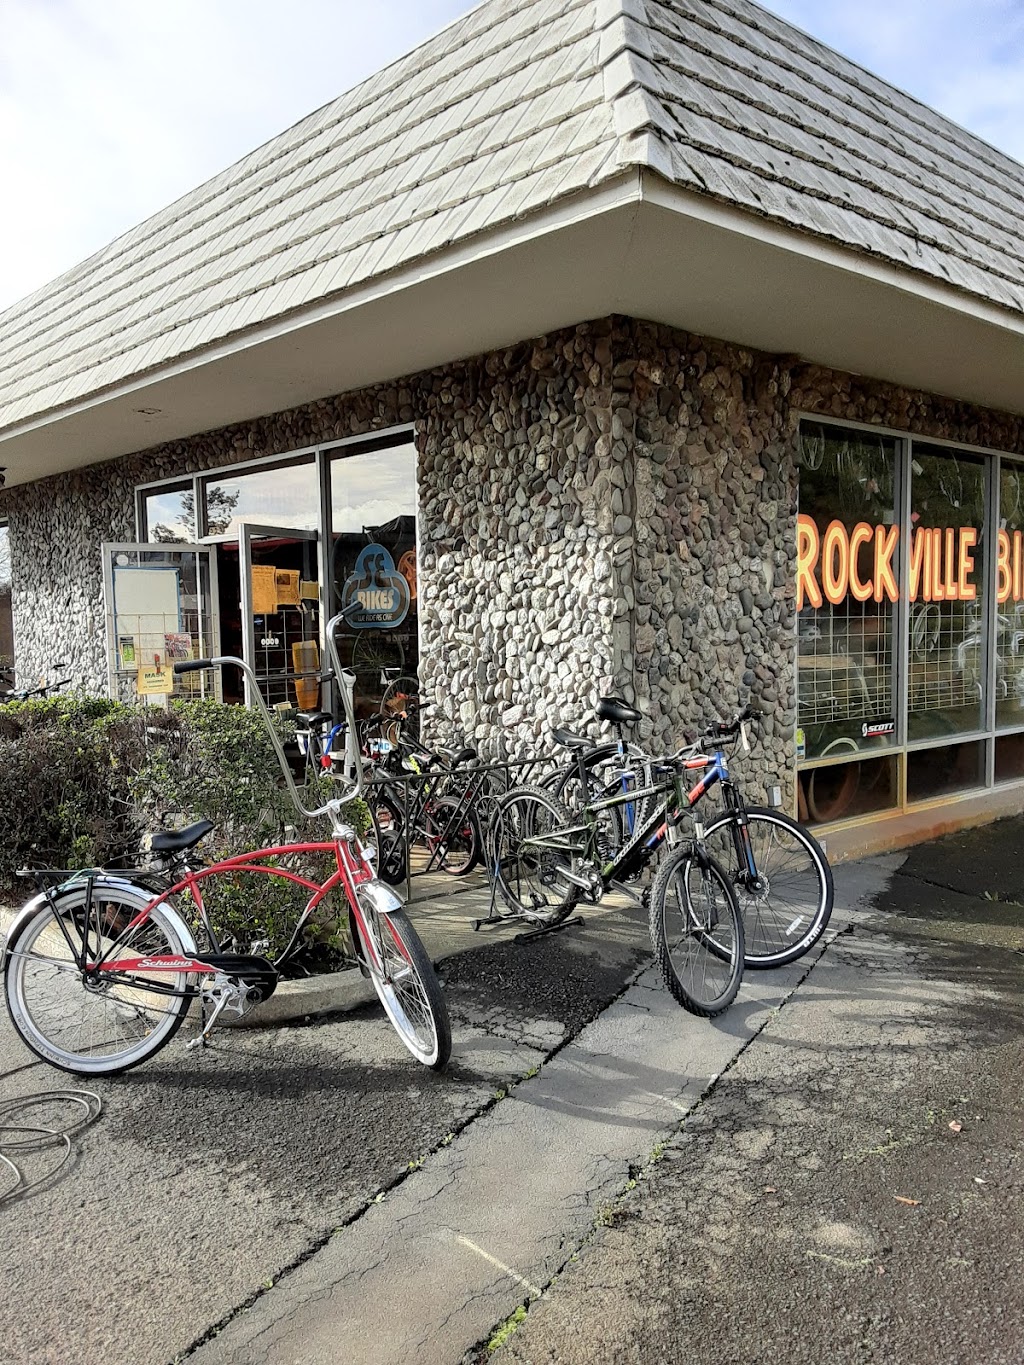 Rockville Bike | 2288A Rockville Rd, Fairfield, CA 94534 | Phone: (707) 864-2453